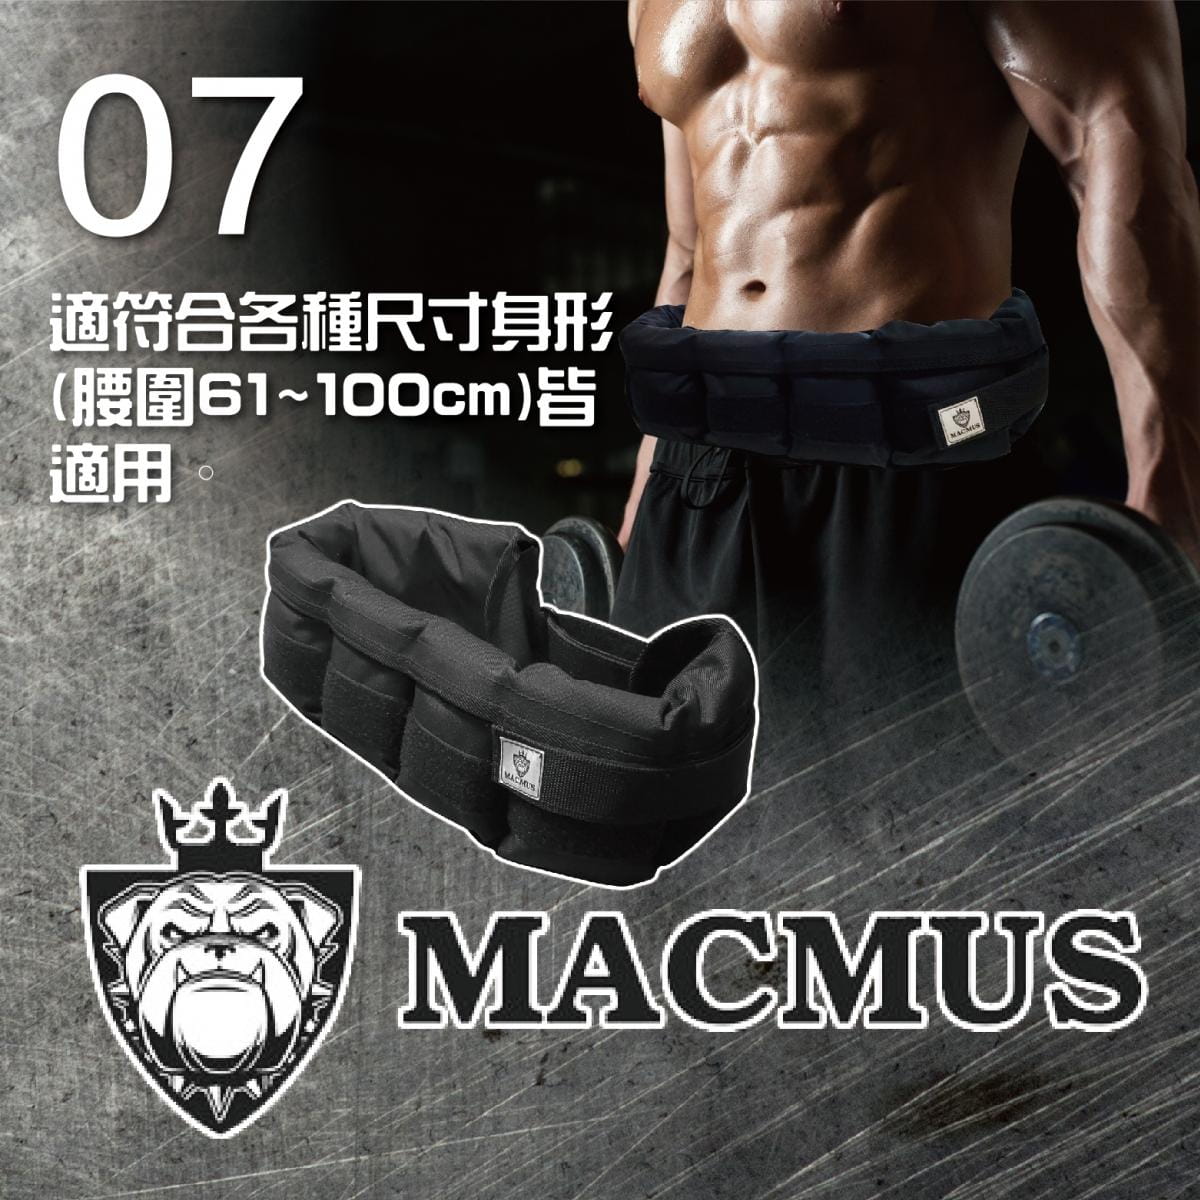 【MACMUS】6.4公斤負重腰帶｜8格式可調整重訓腰帶｜強化核心肌群鍛鍊腰部肌肉 5